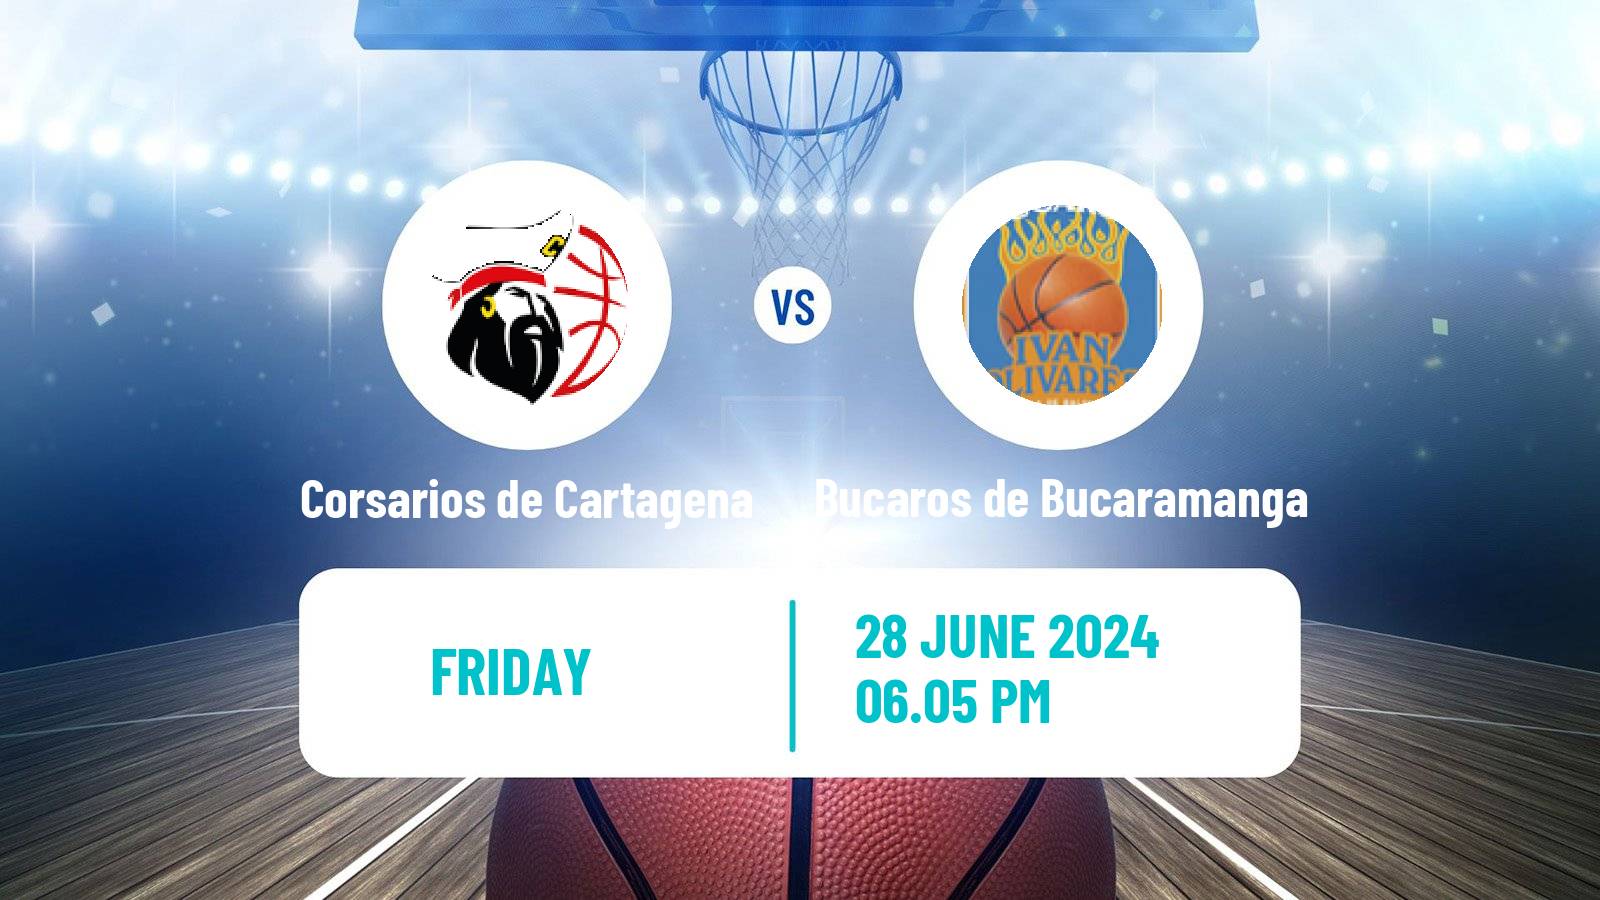 Basketball Colombian LBP Basketball Corsarios de Cartagena - Bucaros de Bucaramanga